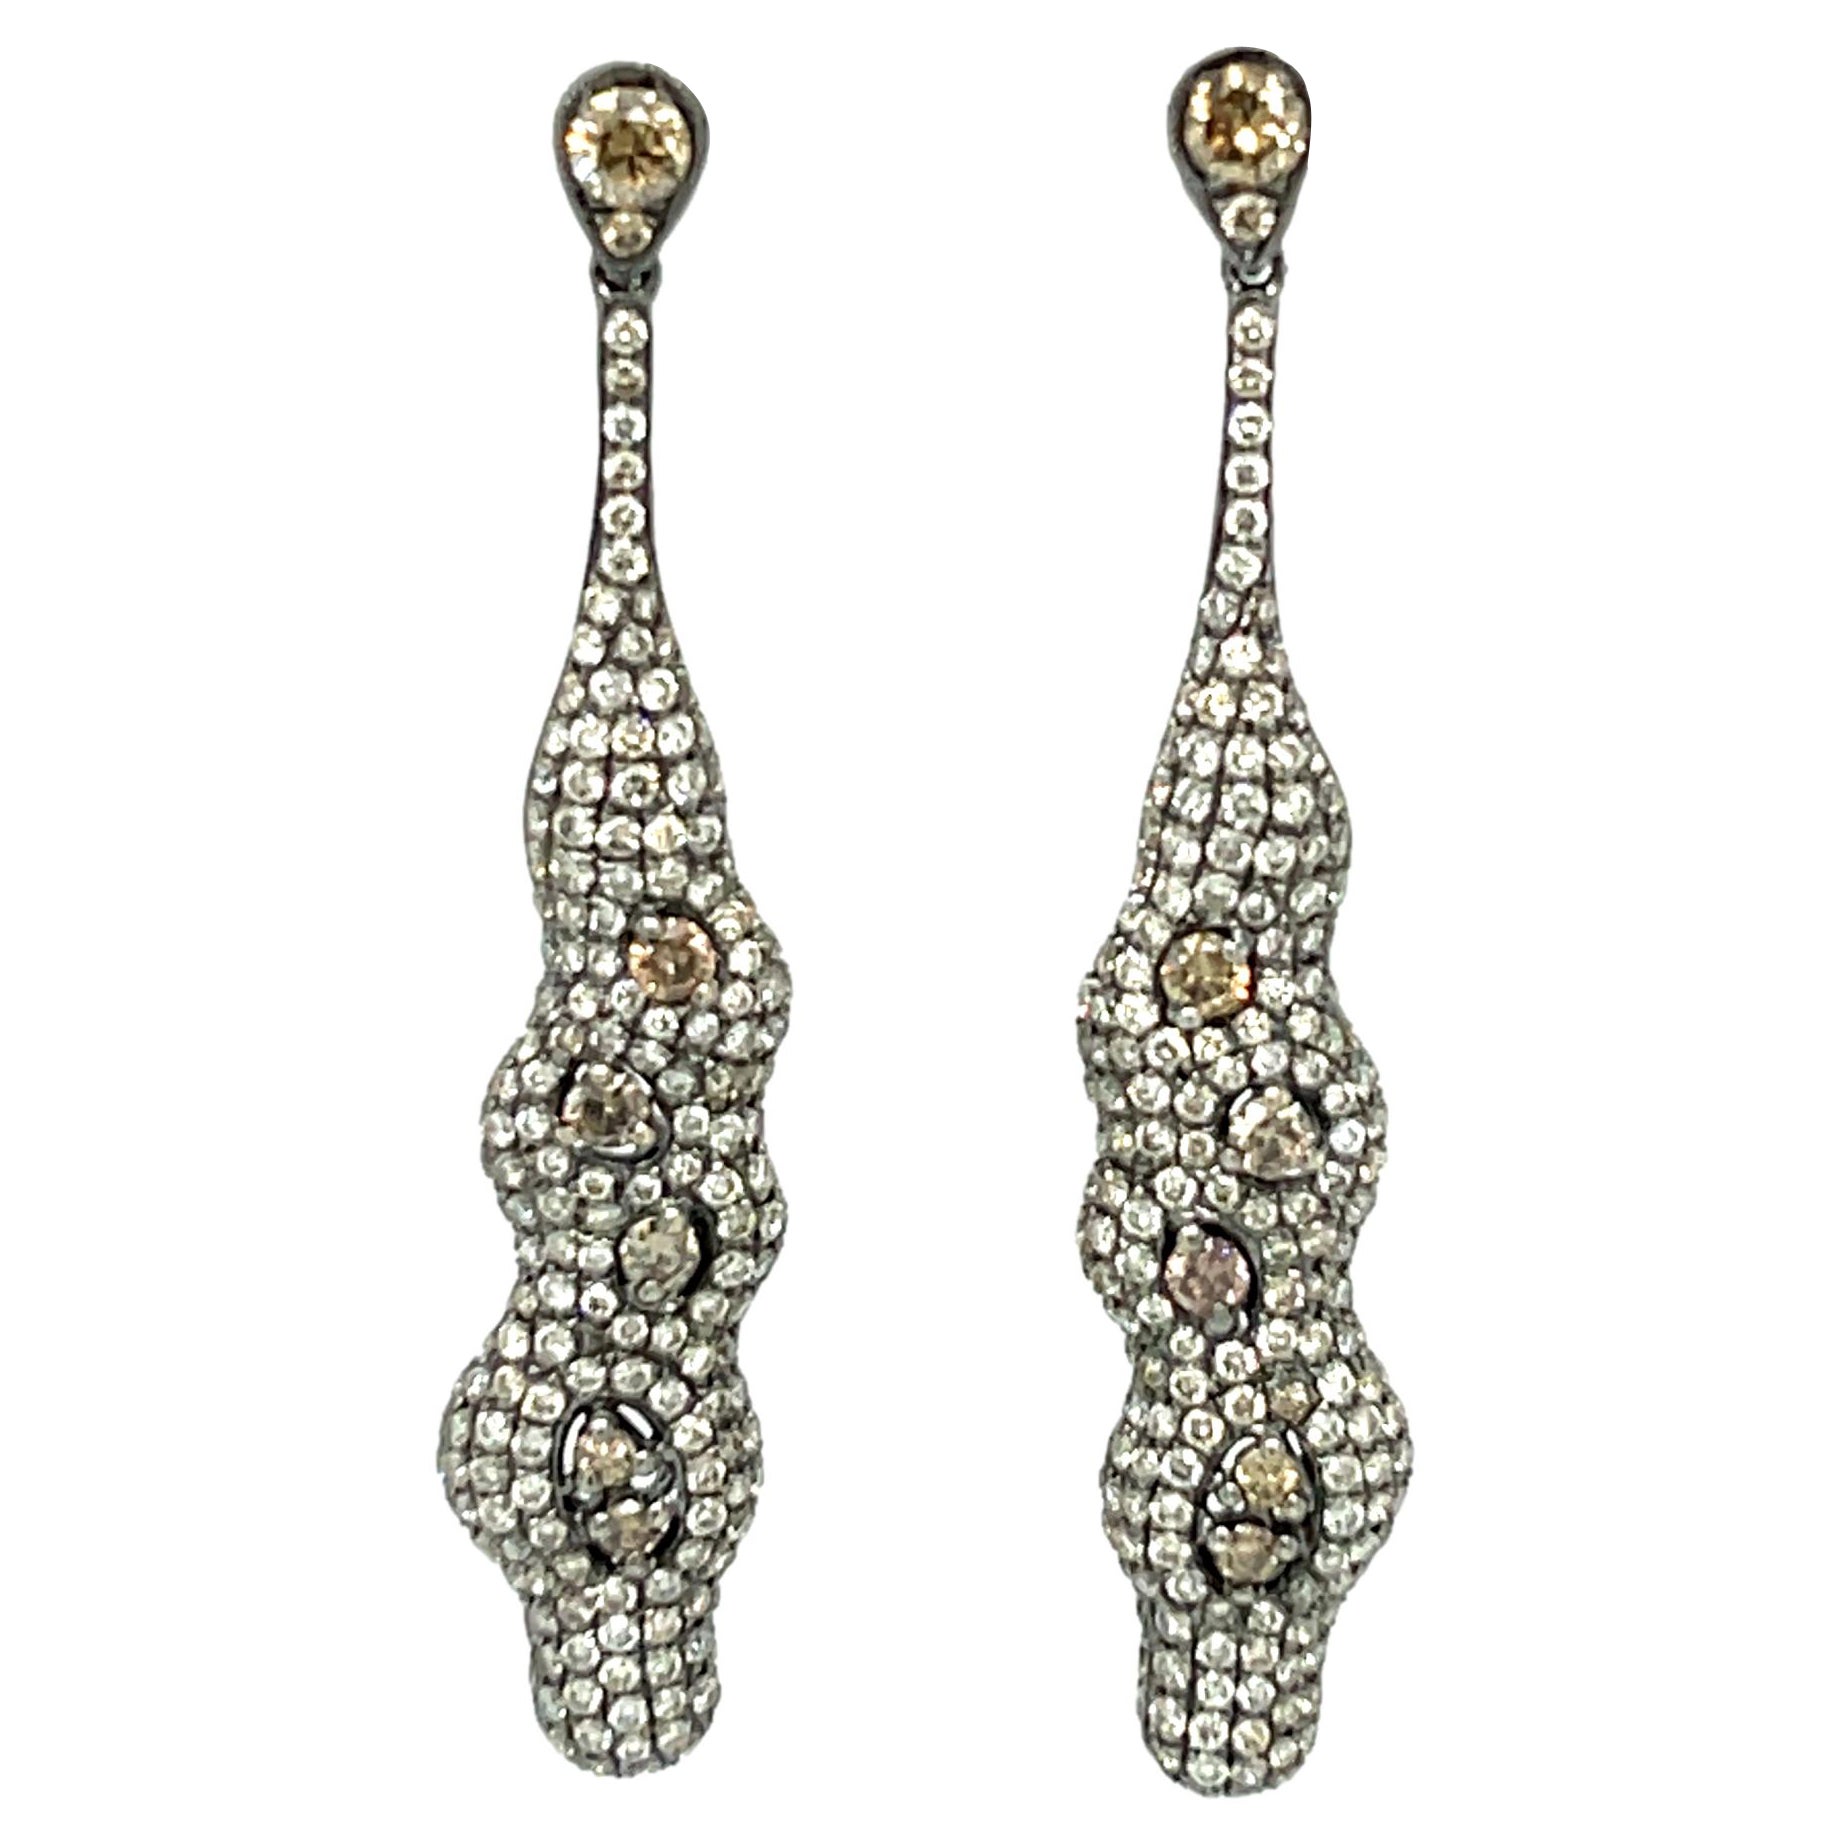 Fancy colored Diamond Dangling Earrings in 18KWB Gold